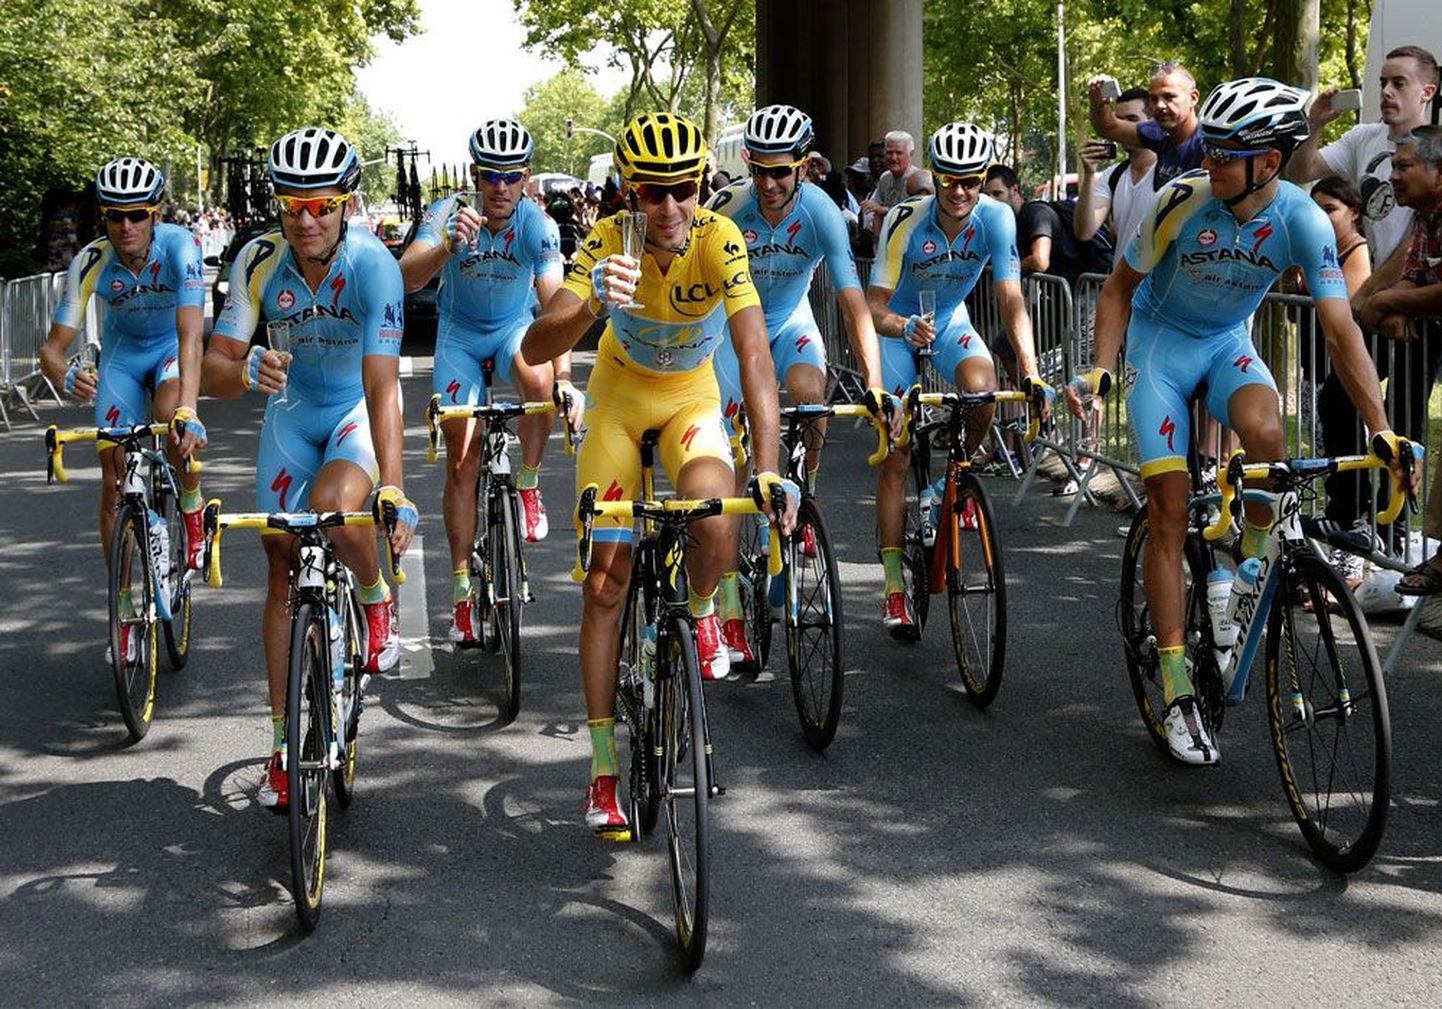 Команда Astana начала последний этап Tour de France с традиционного бокала шампанского. В желтой майке – победитель Tour de France в нынешнем году итальянец Винченцо Нибали, справа – его помощник, один из лучших эстонских велогонщиков Танель Кангерт.